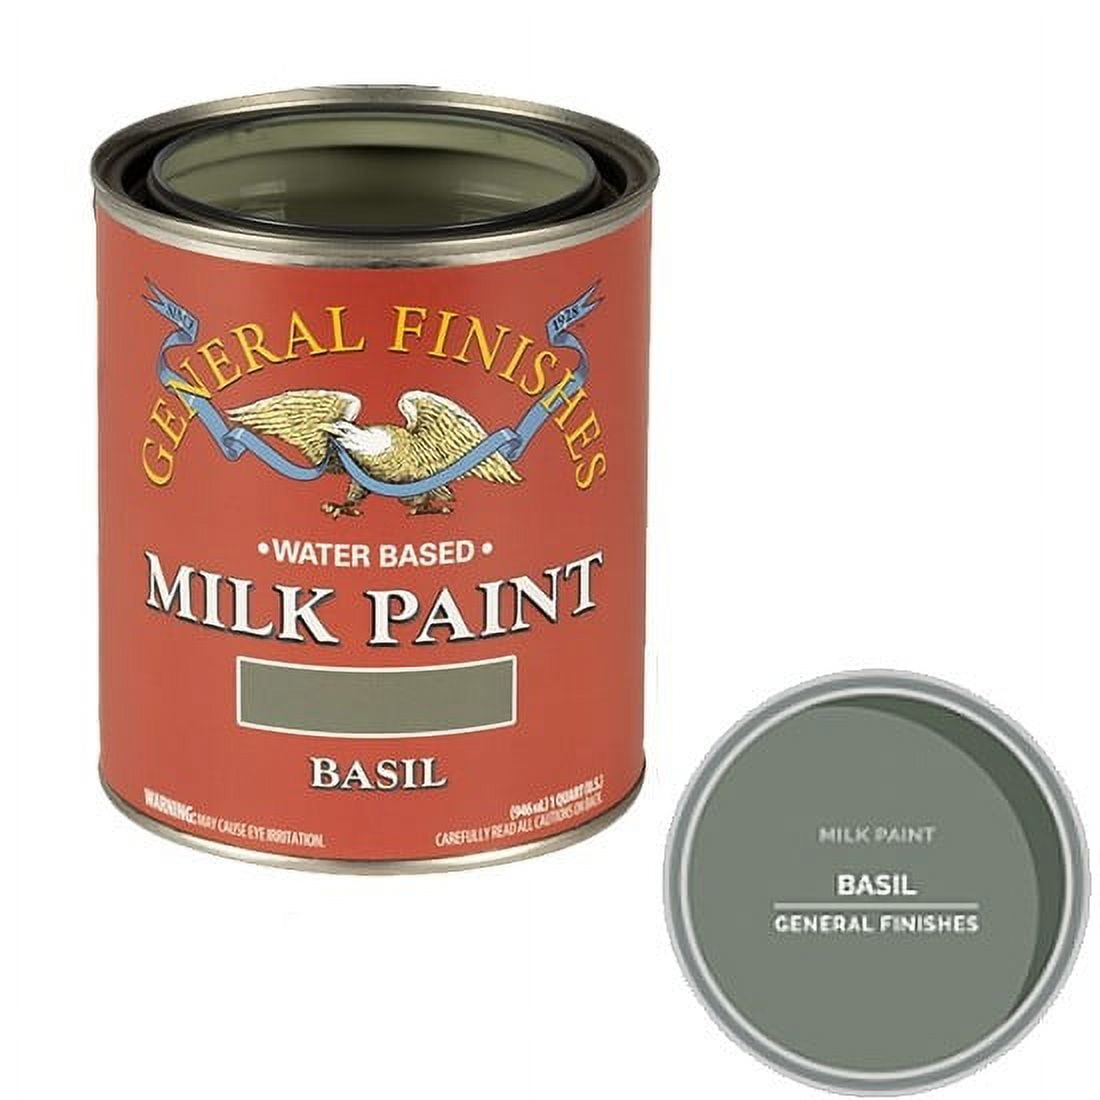 GF Milk Paint - Basil - Quart